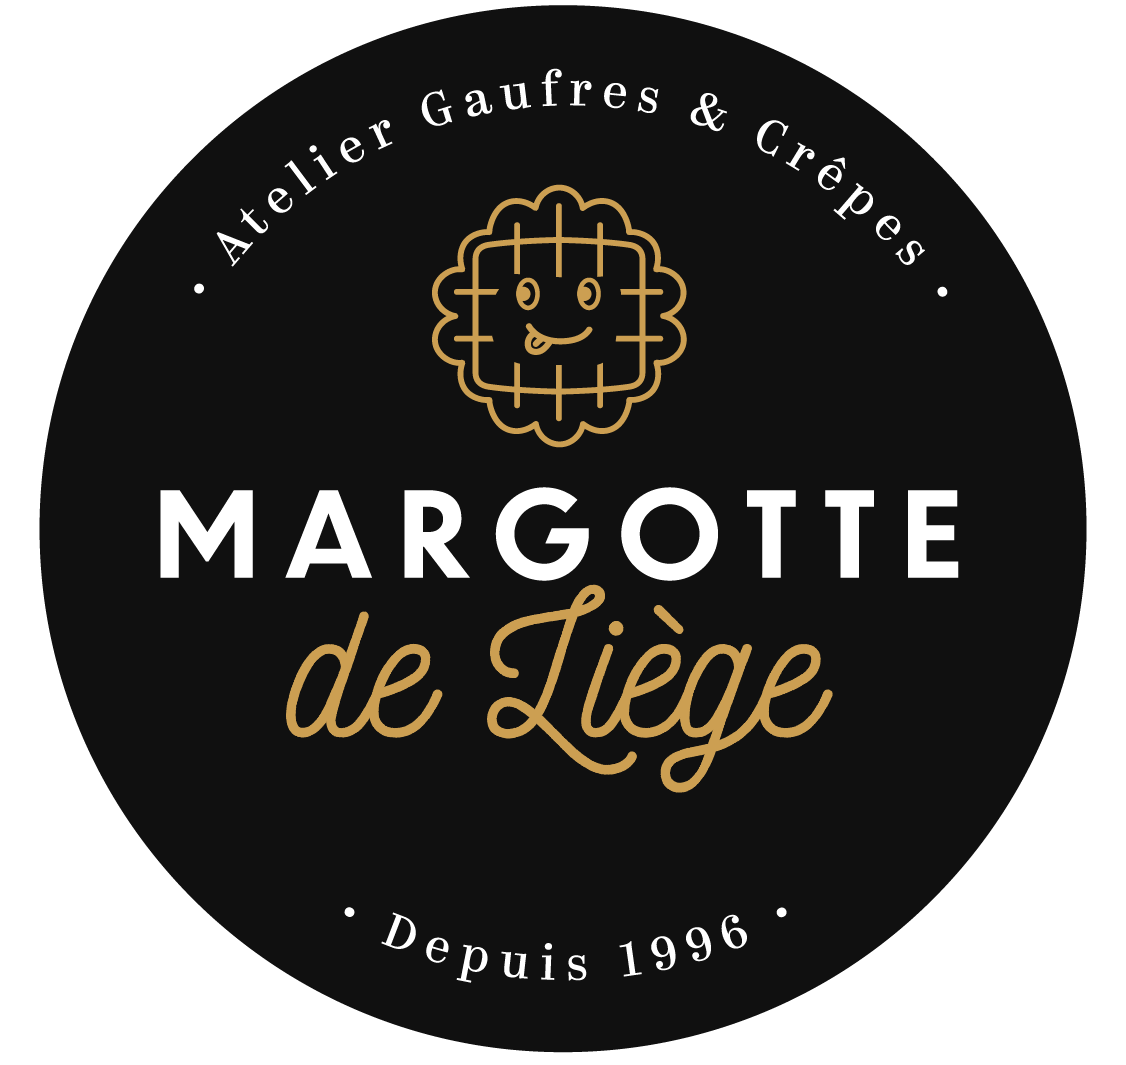 Margotte de Liège